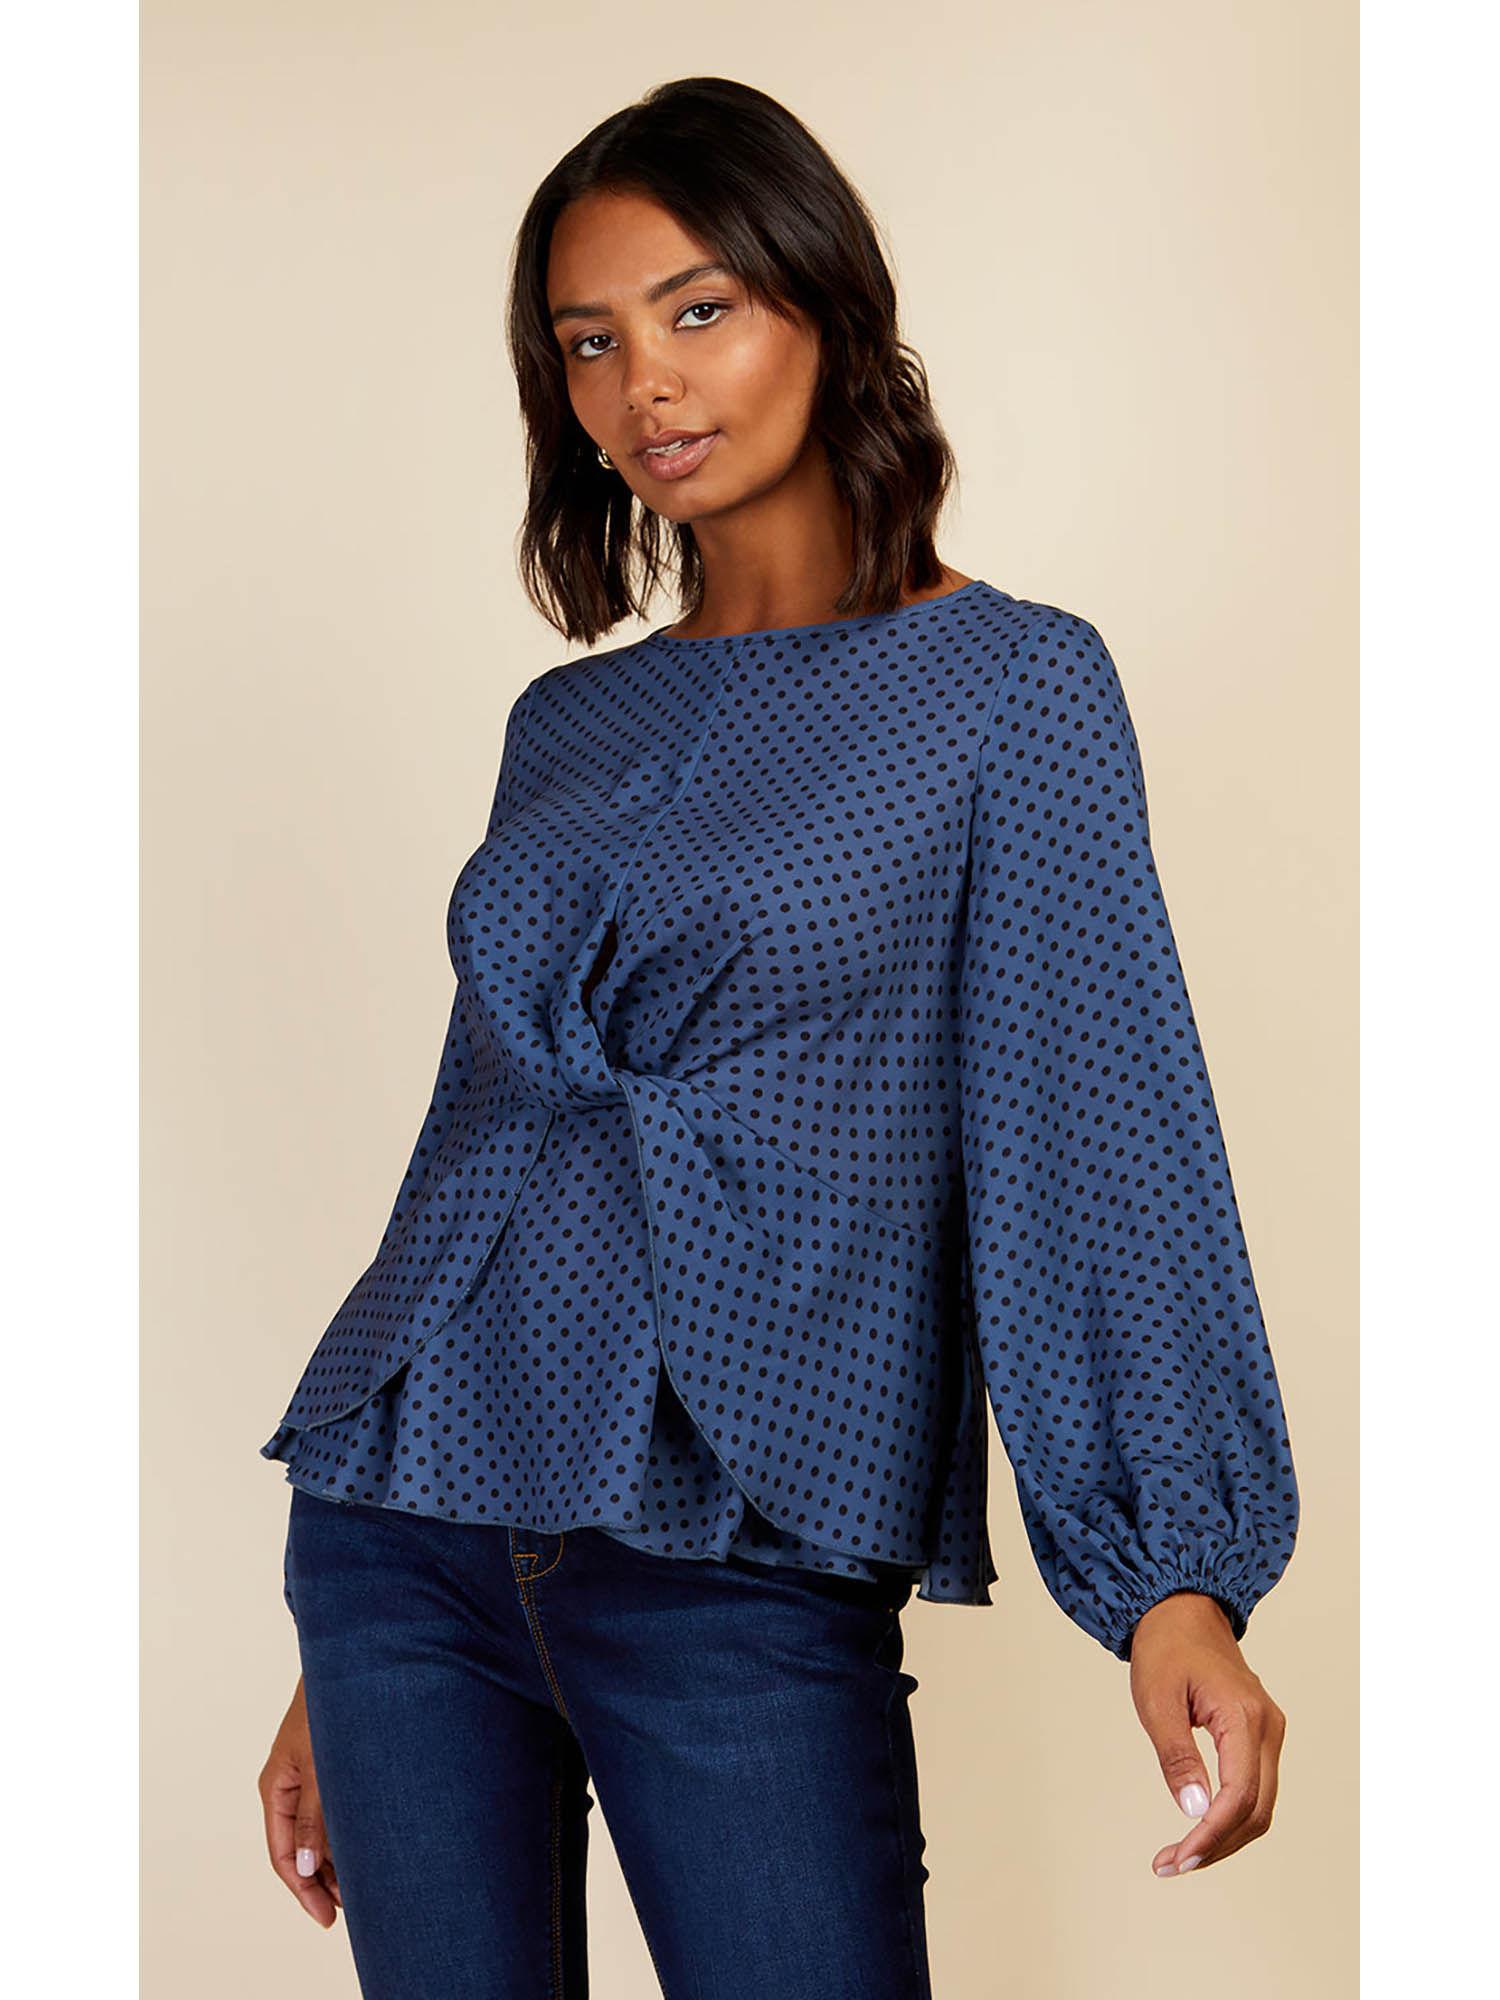 blue spot twist detail blouse by vogue williams